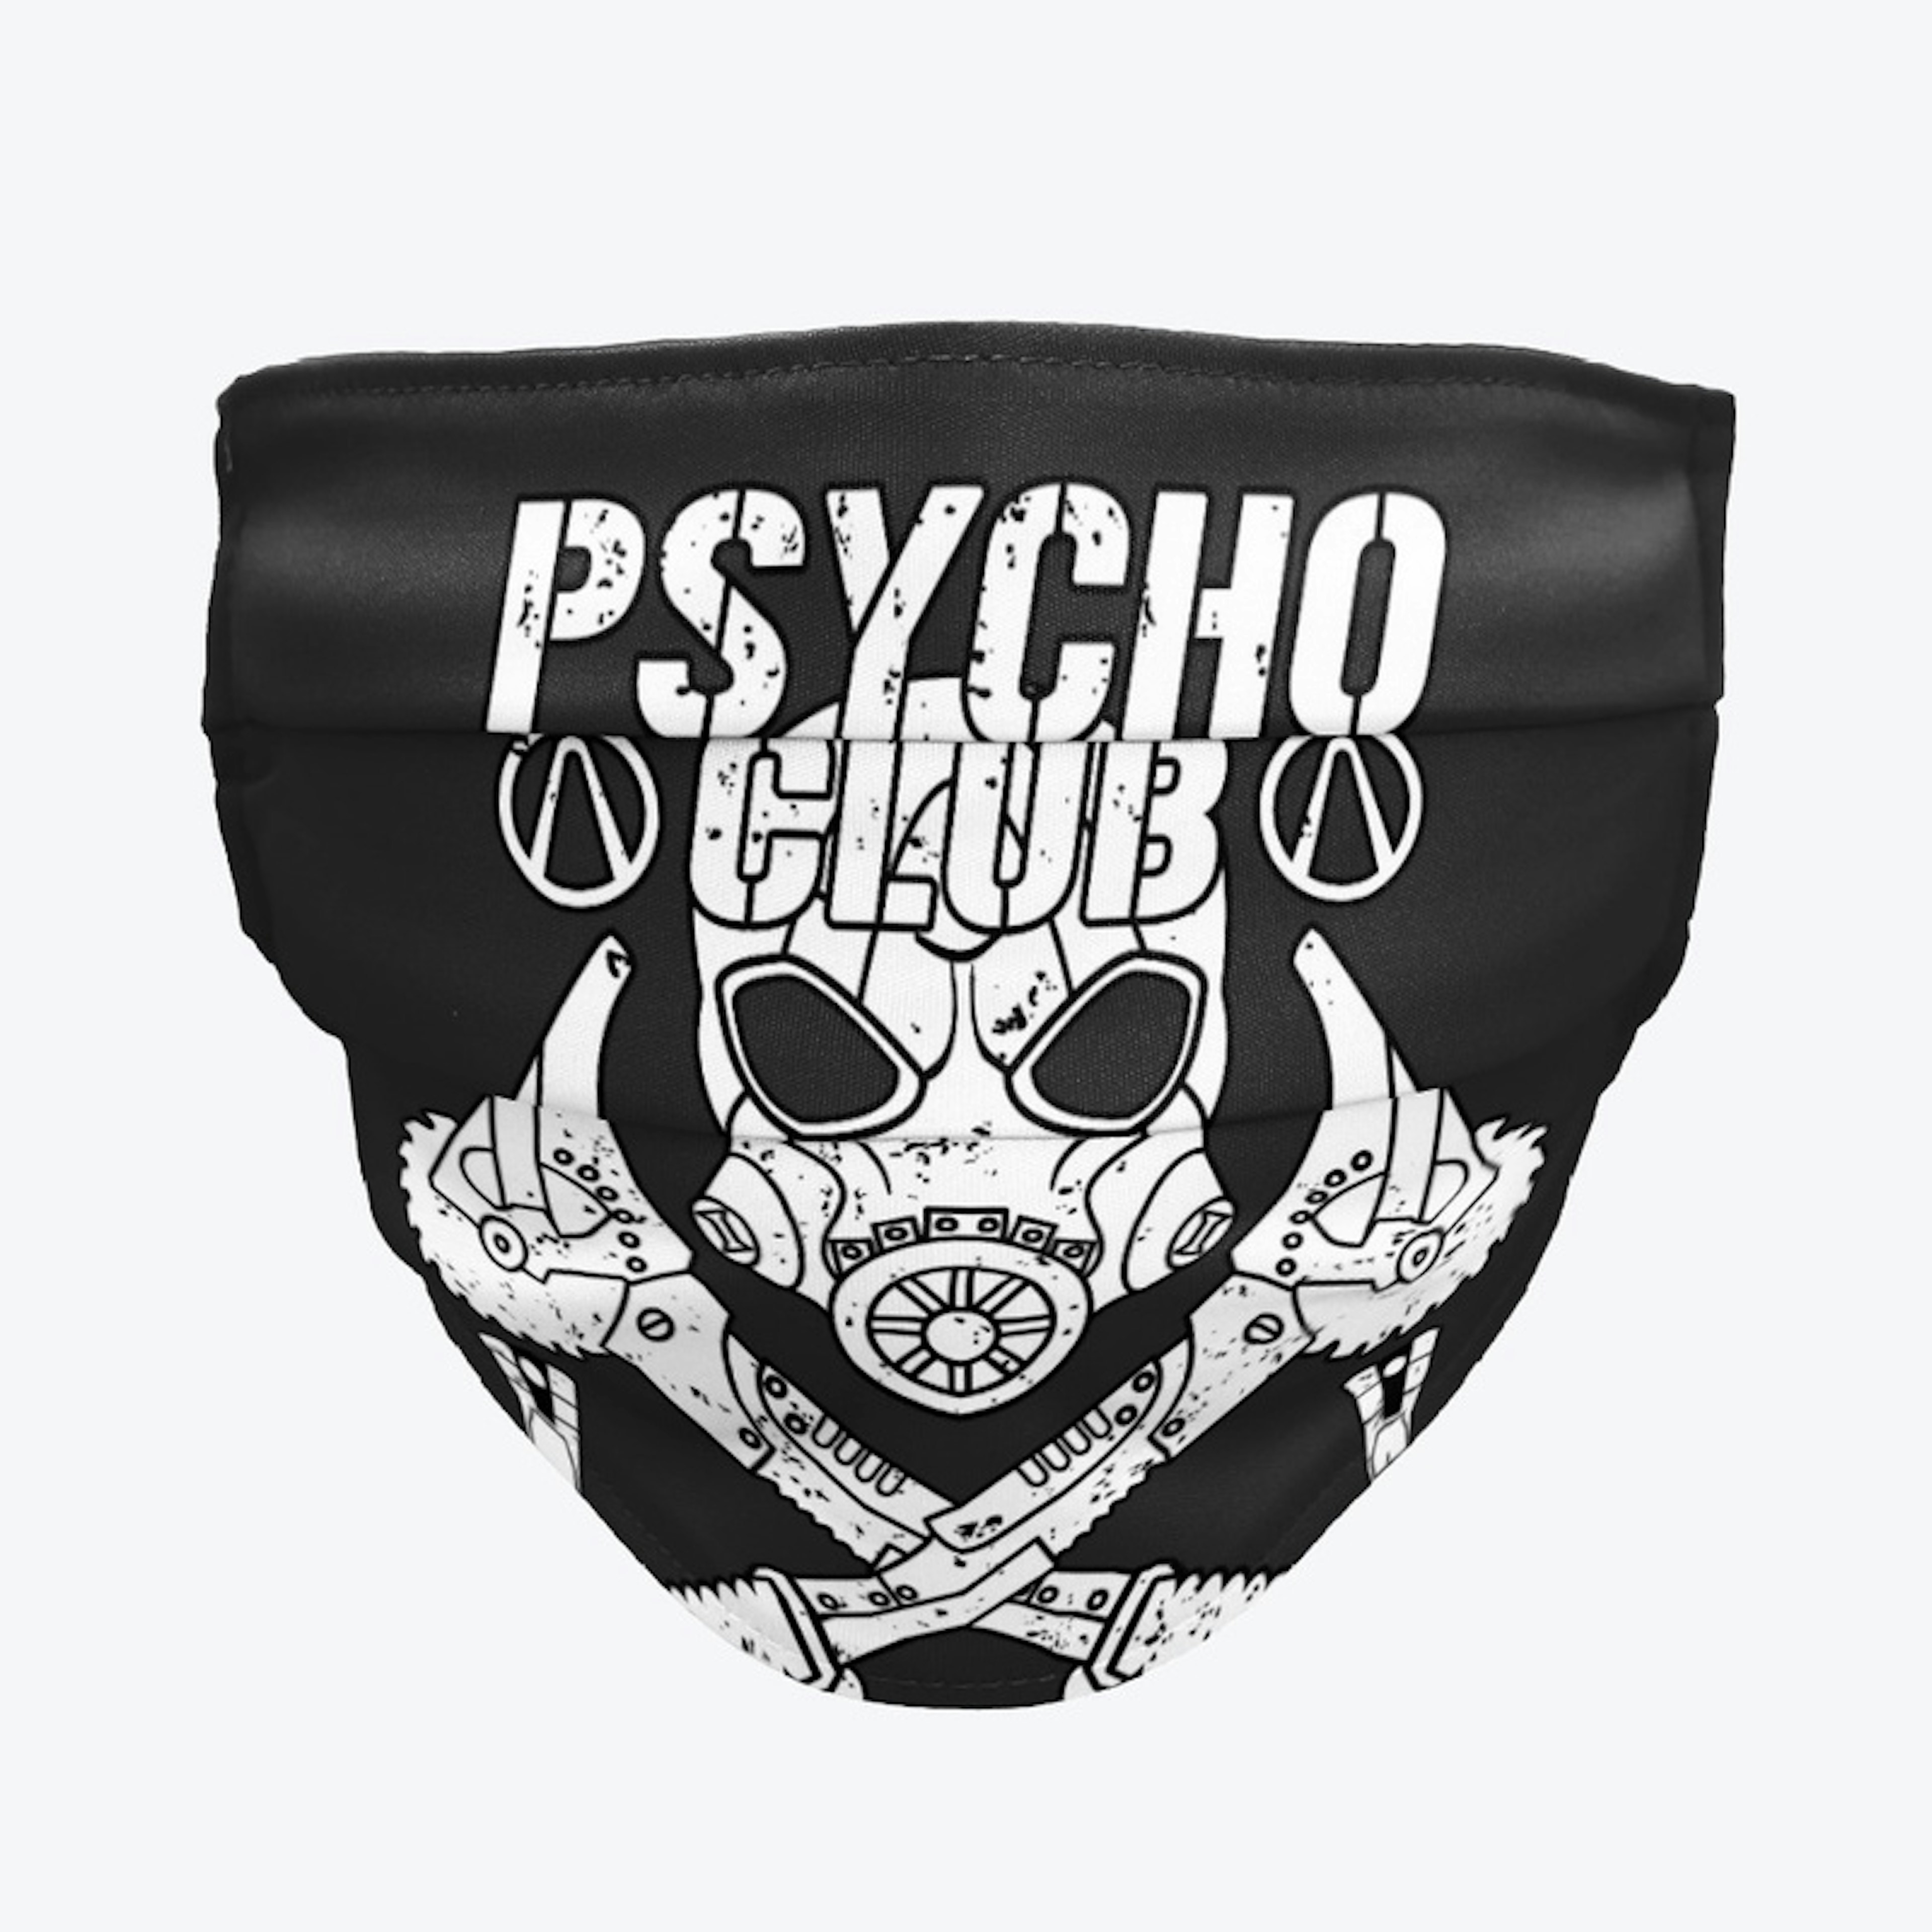 Psycho Club